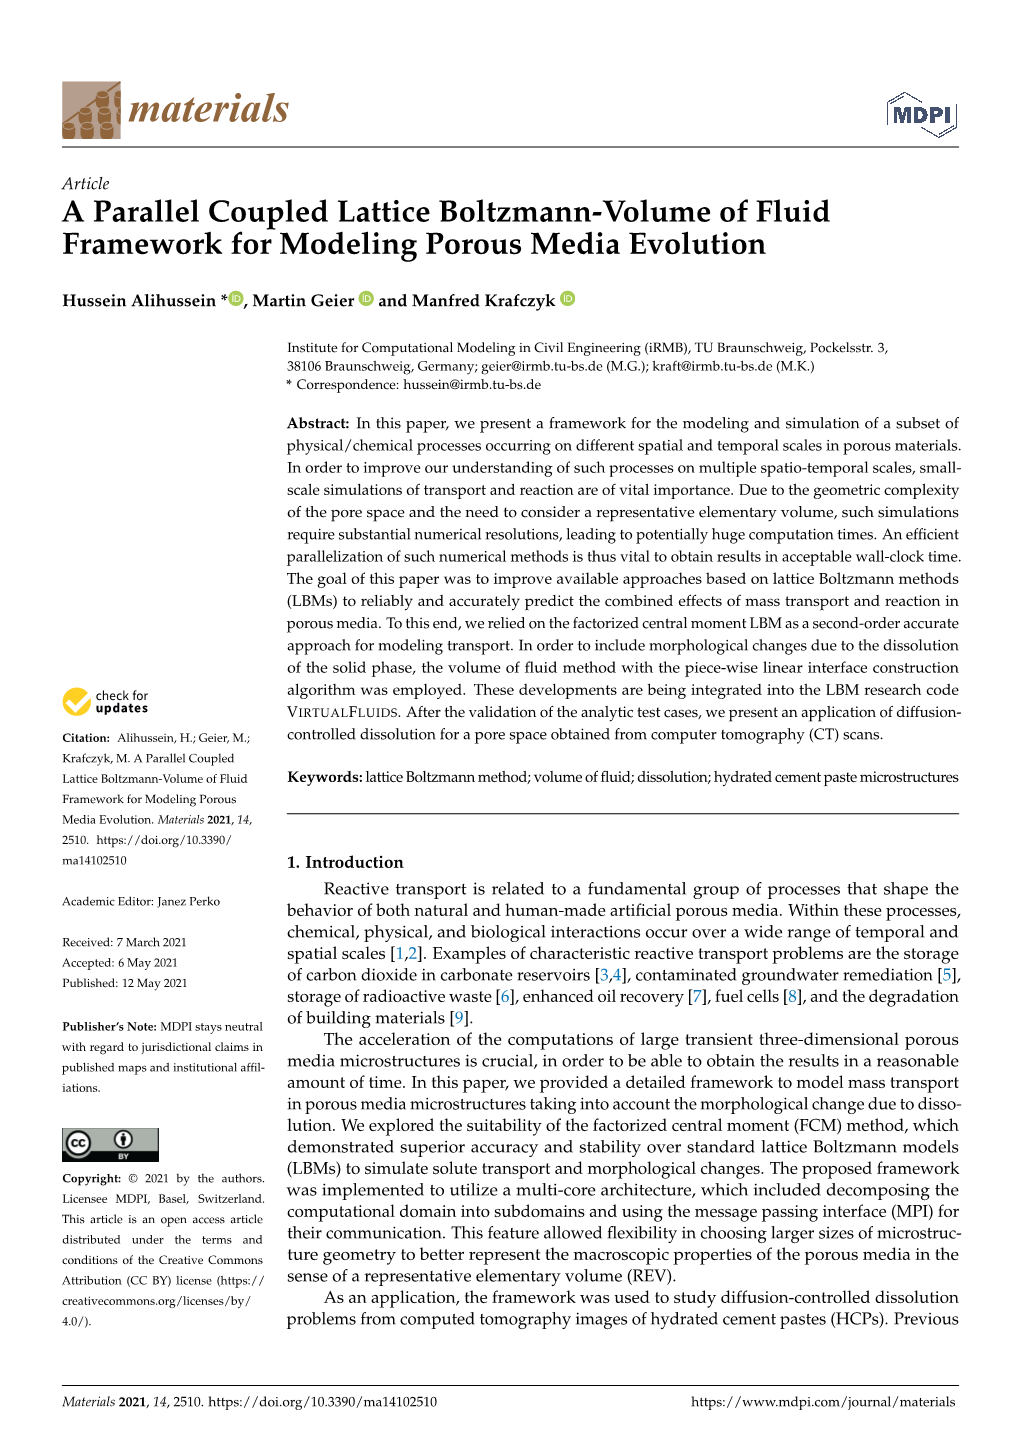 A Parallel Coupled Lattice Boltzmann-Volume of Fluid Framework for Modeling Porous Media Evolution